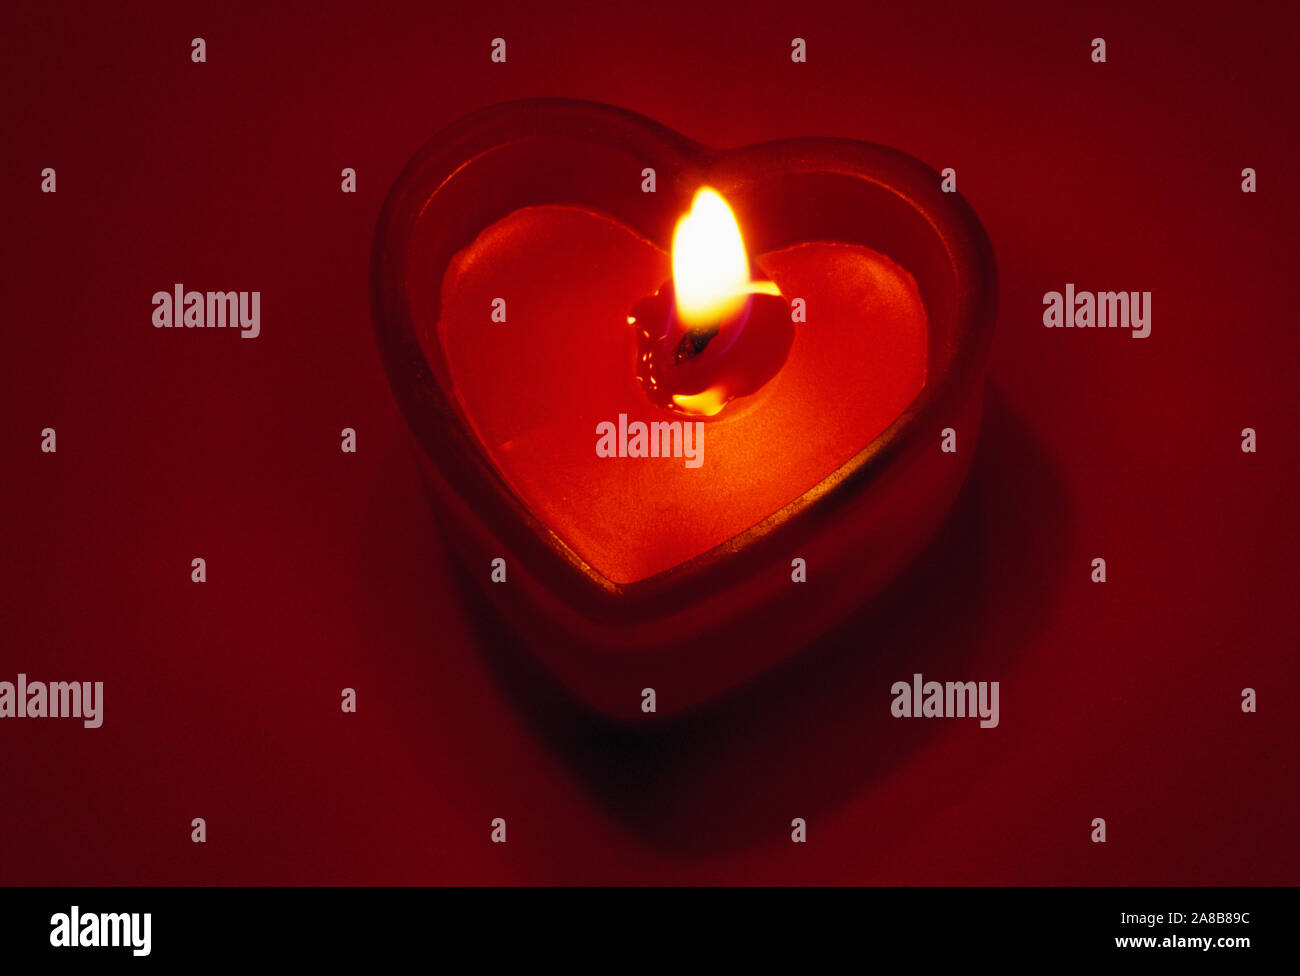 Fiamma ardente nel cuore di candela sagomata contro lo sfondo rosso Foto Stock